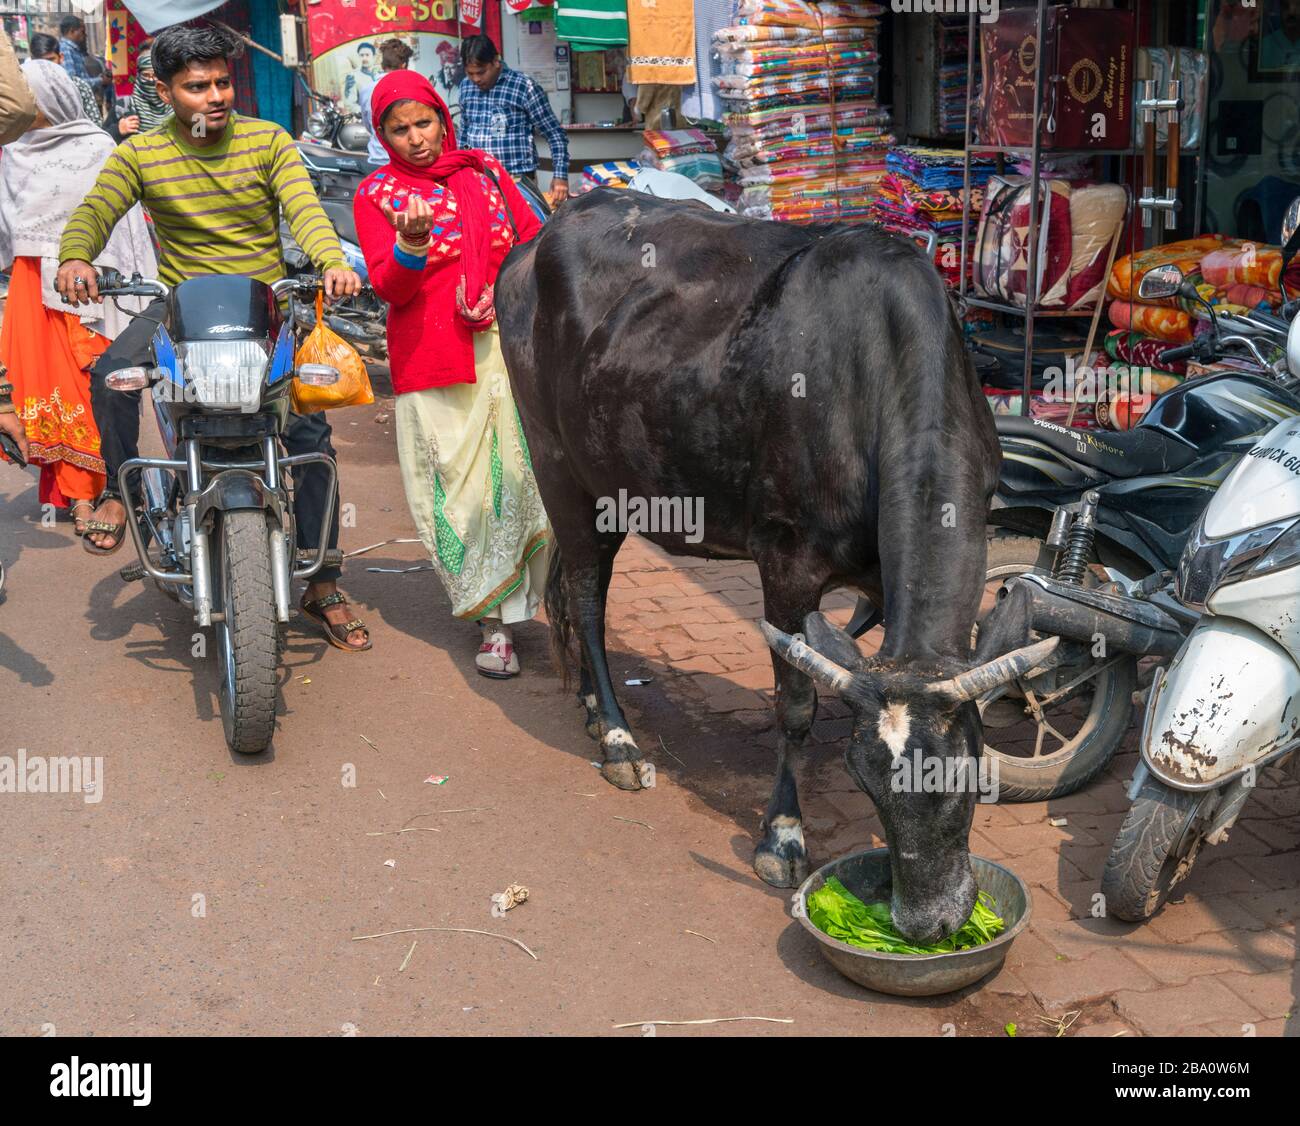 Vache errée dans une rue à Agra, Uttar Pradesh, Inde. Les vaches sont considérées comme sacrées dans l'hindouisme et se baladent librement dans les rues des villes. Banque D'Images